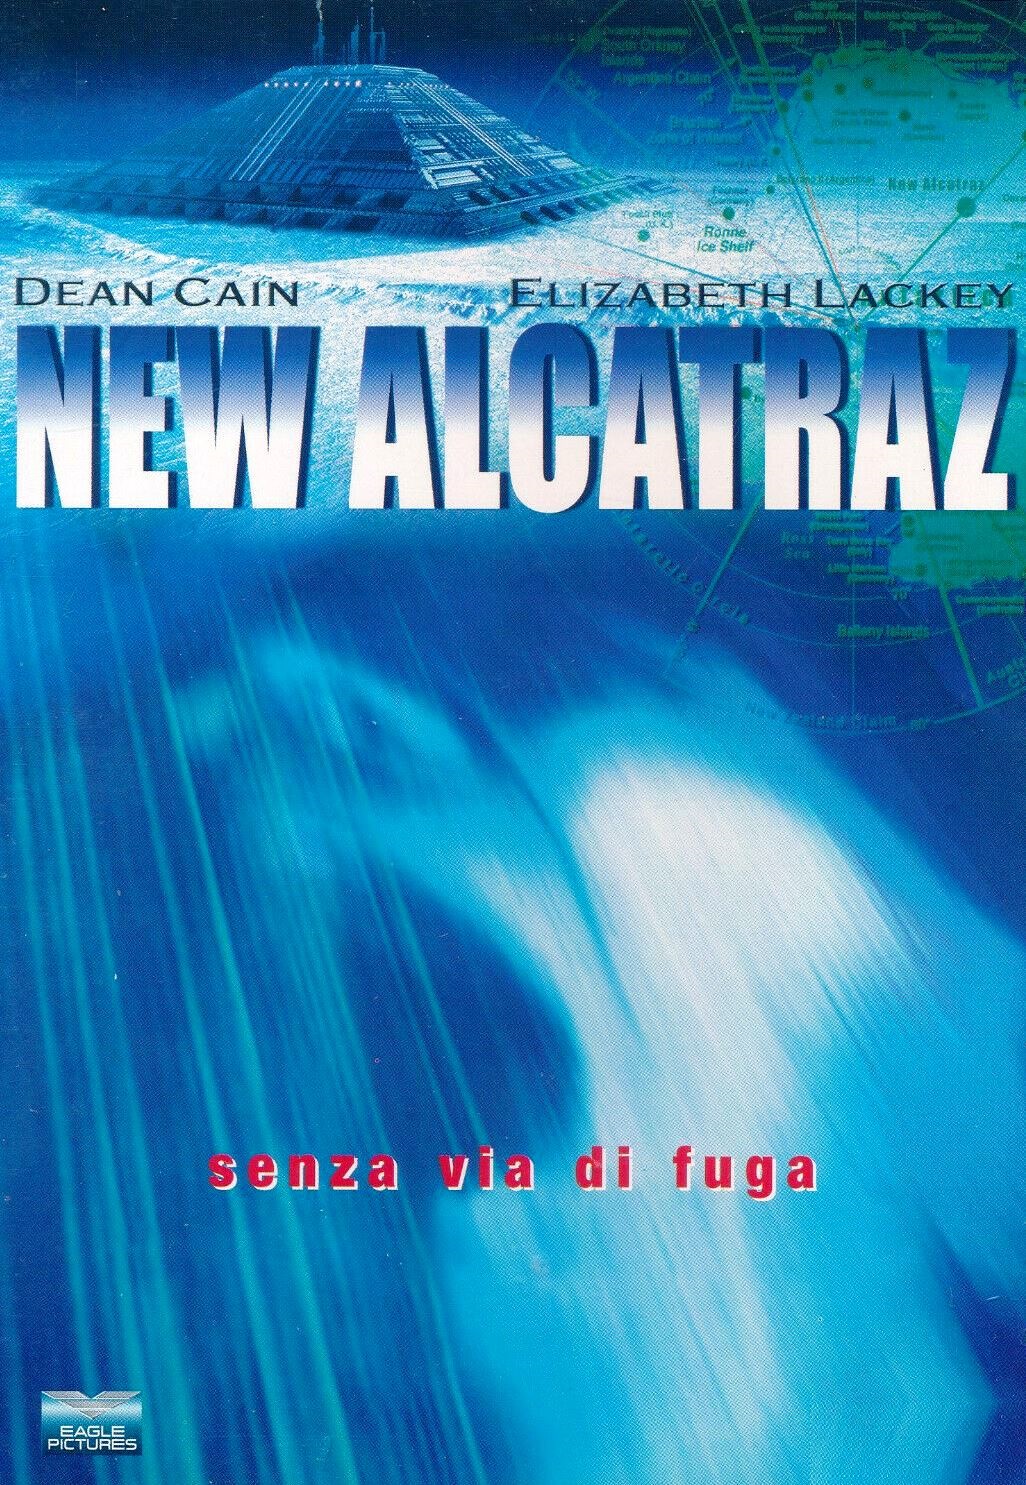 New alcatraz (2001)